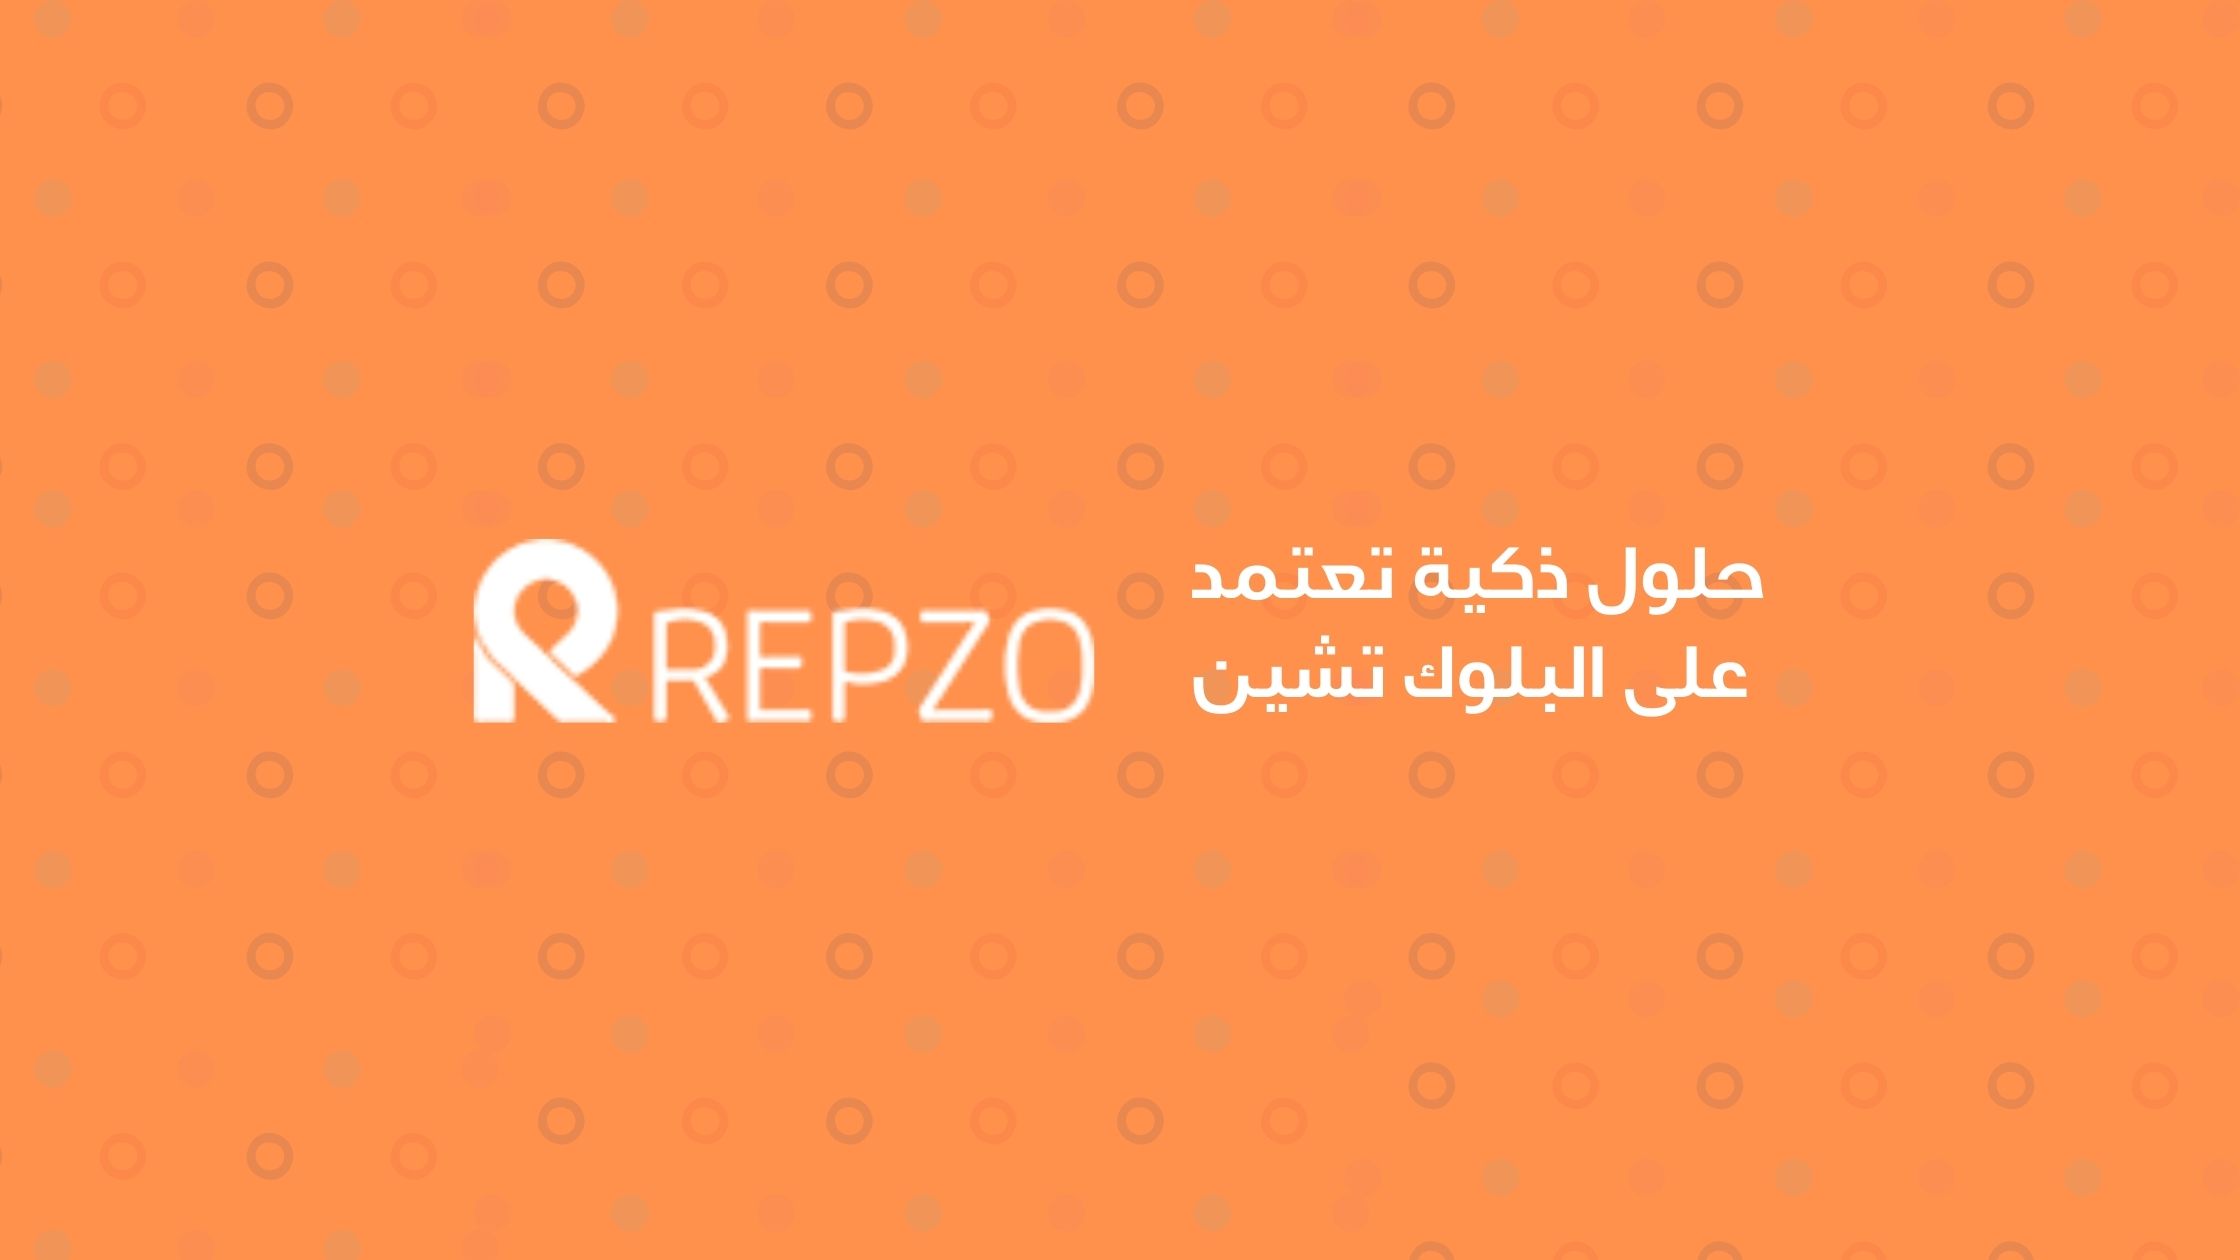 شركة Repzo الأردنية الناشئة تجمع 1.4 مليون دولار من التمويل المرحلي